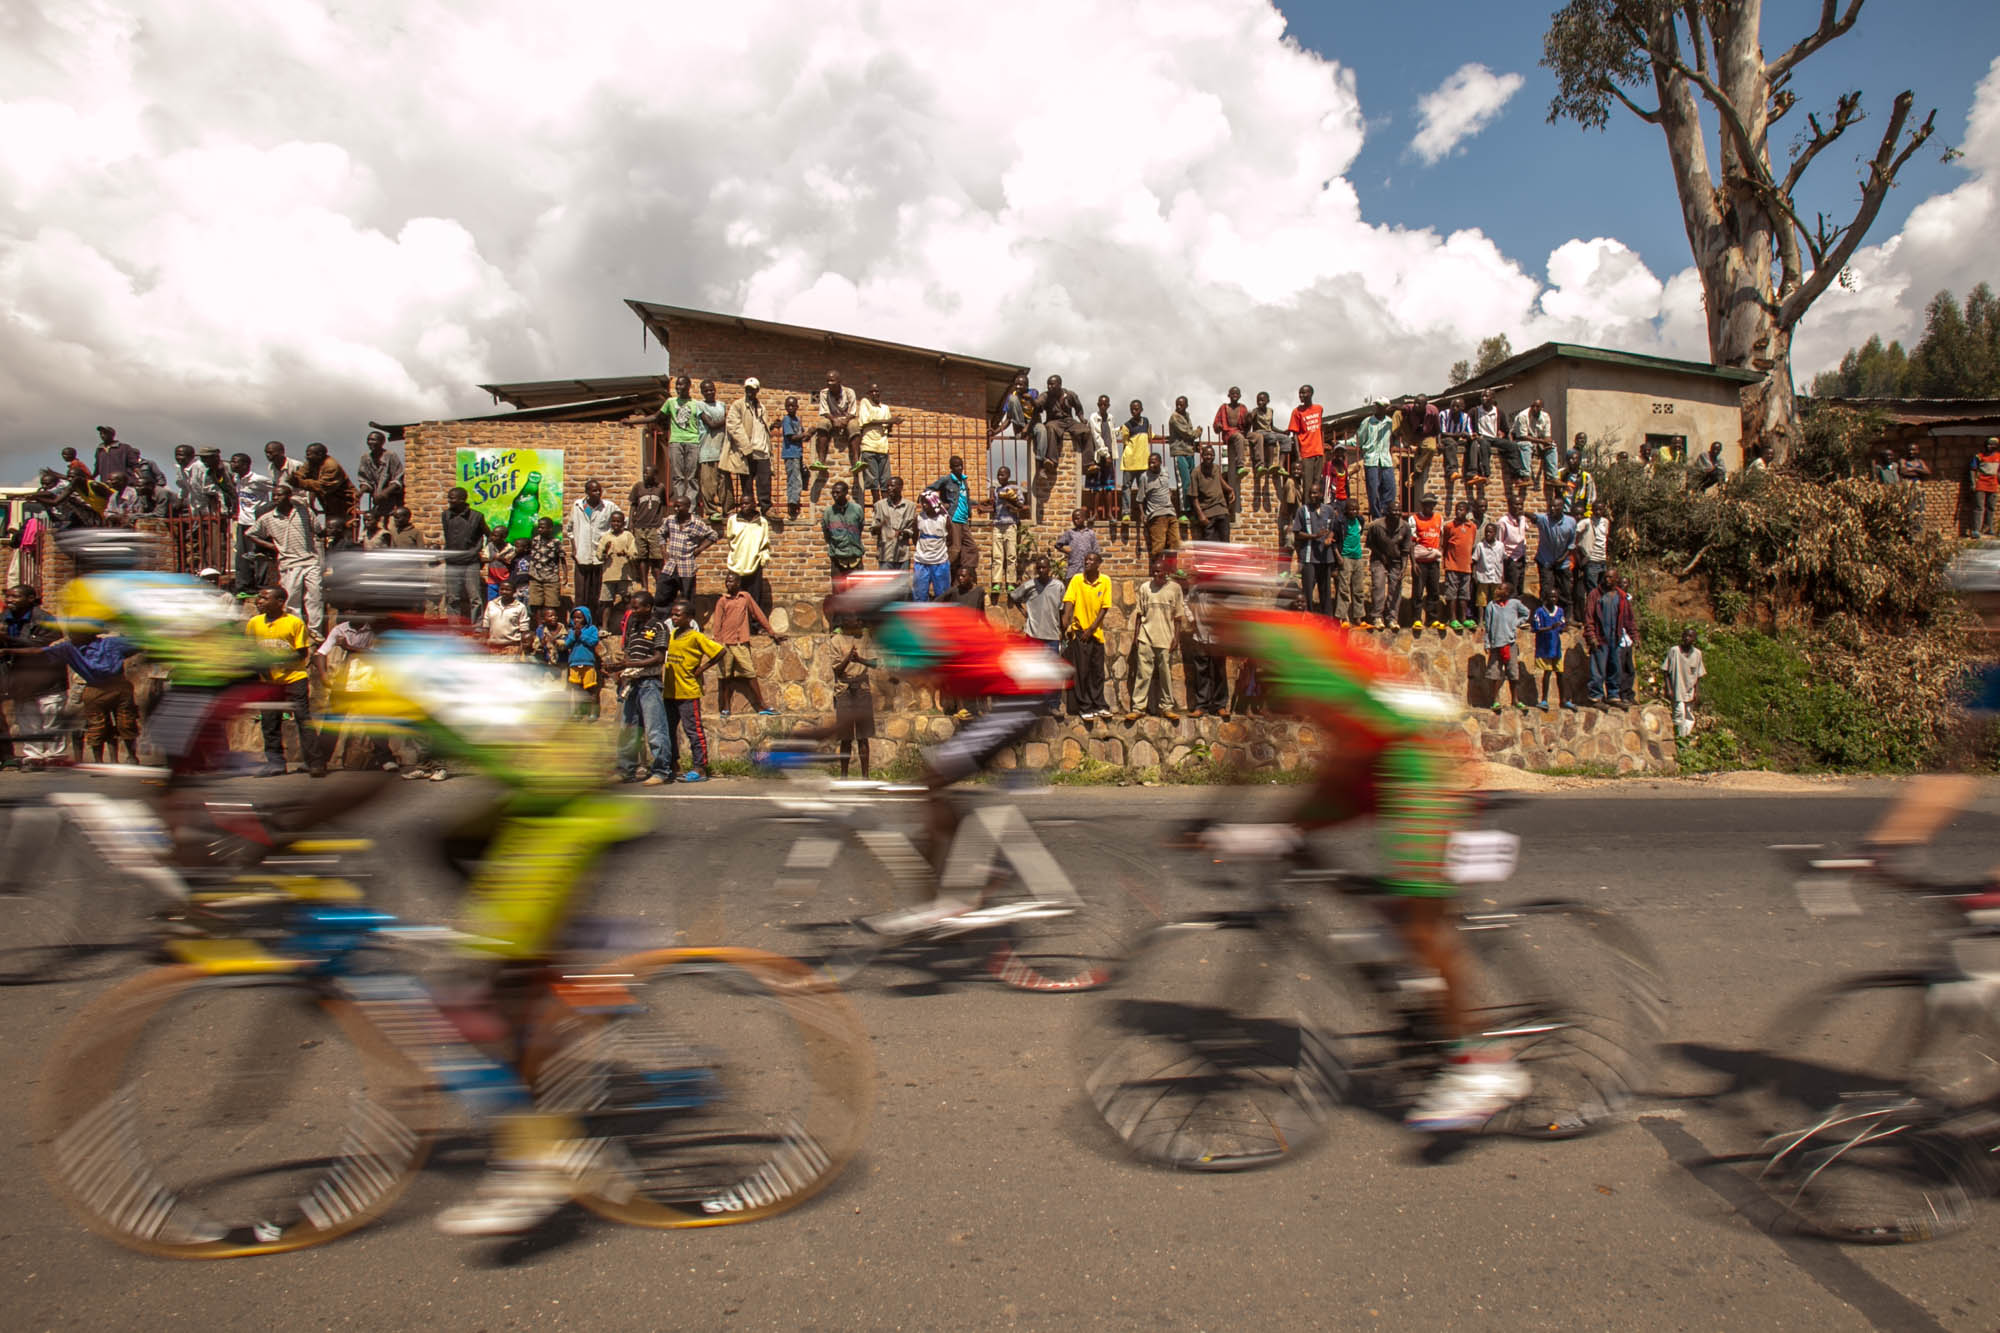 Tour of Rwanda 2009